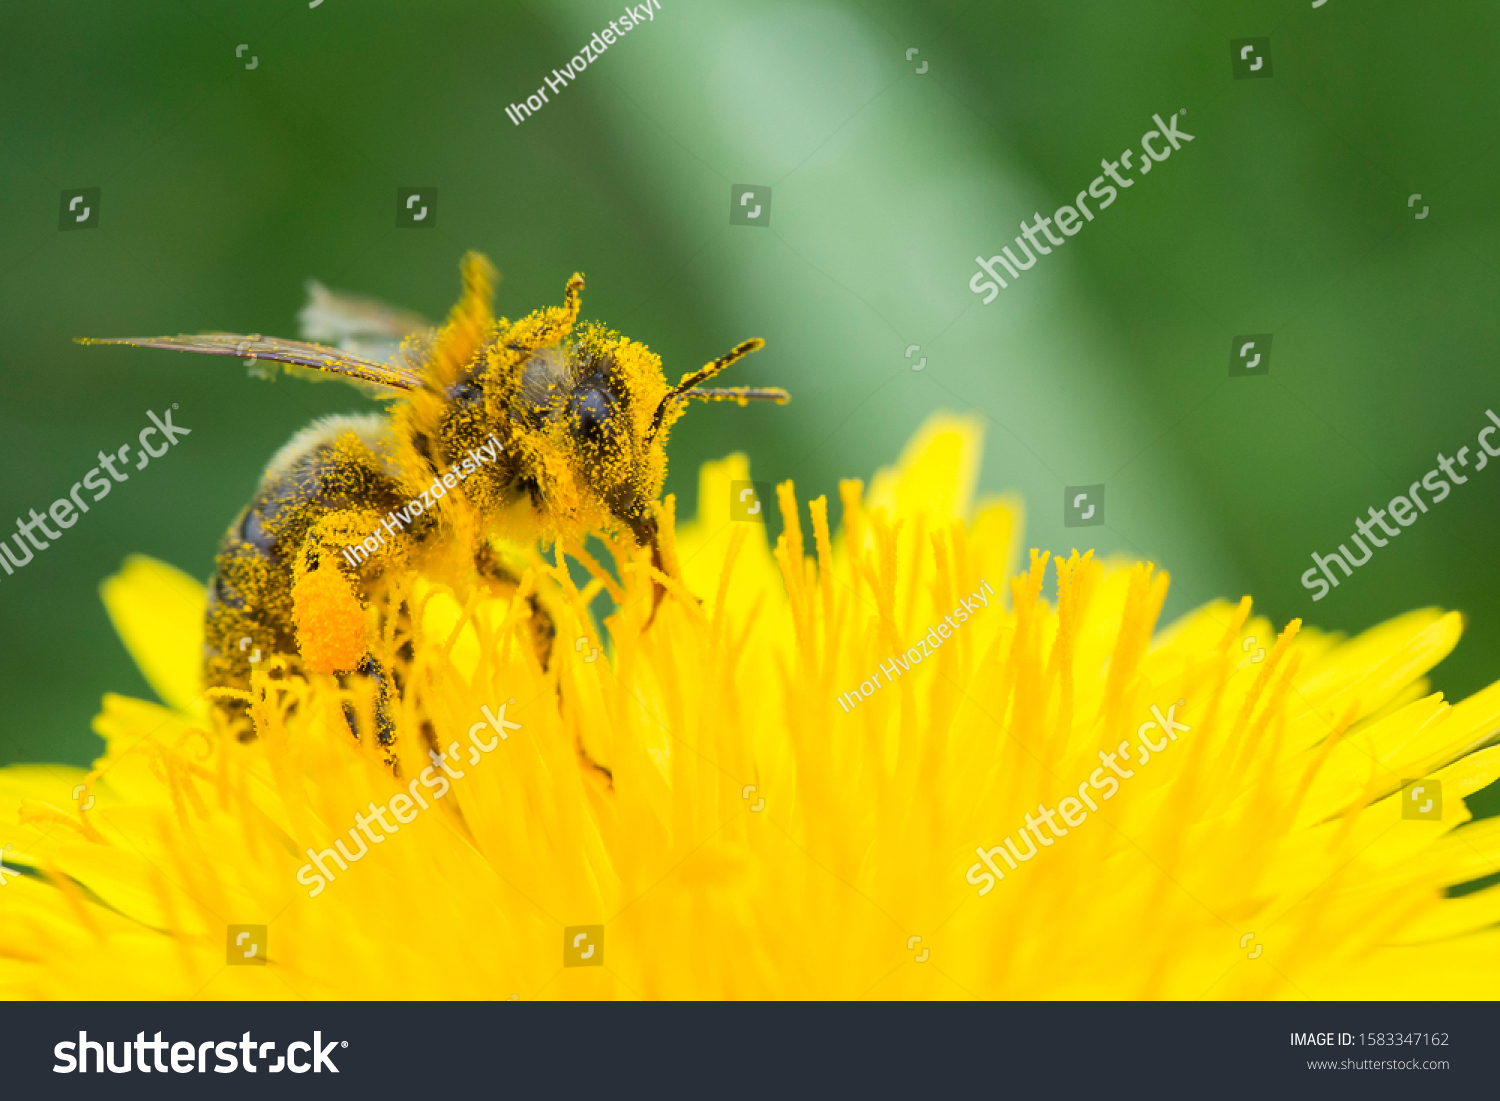 Honey bee on yellow flower in pollen, closeup. Honey bee covered with yellow pollen collecting nectar in flower. 
 #1583347162